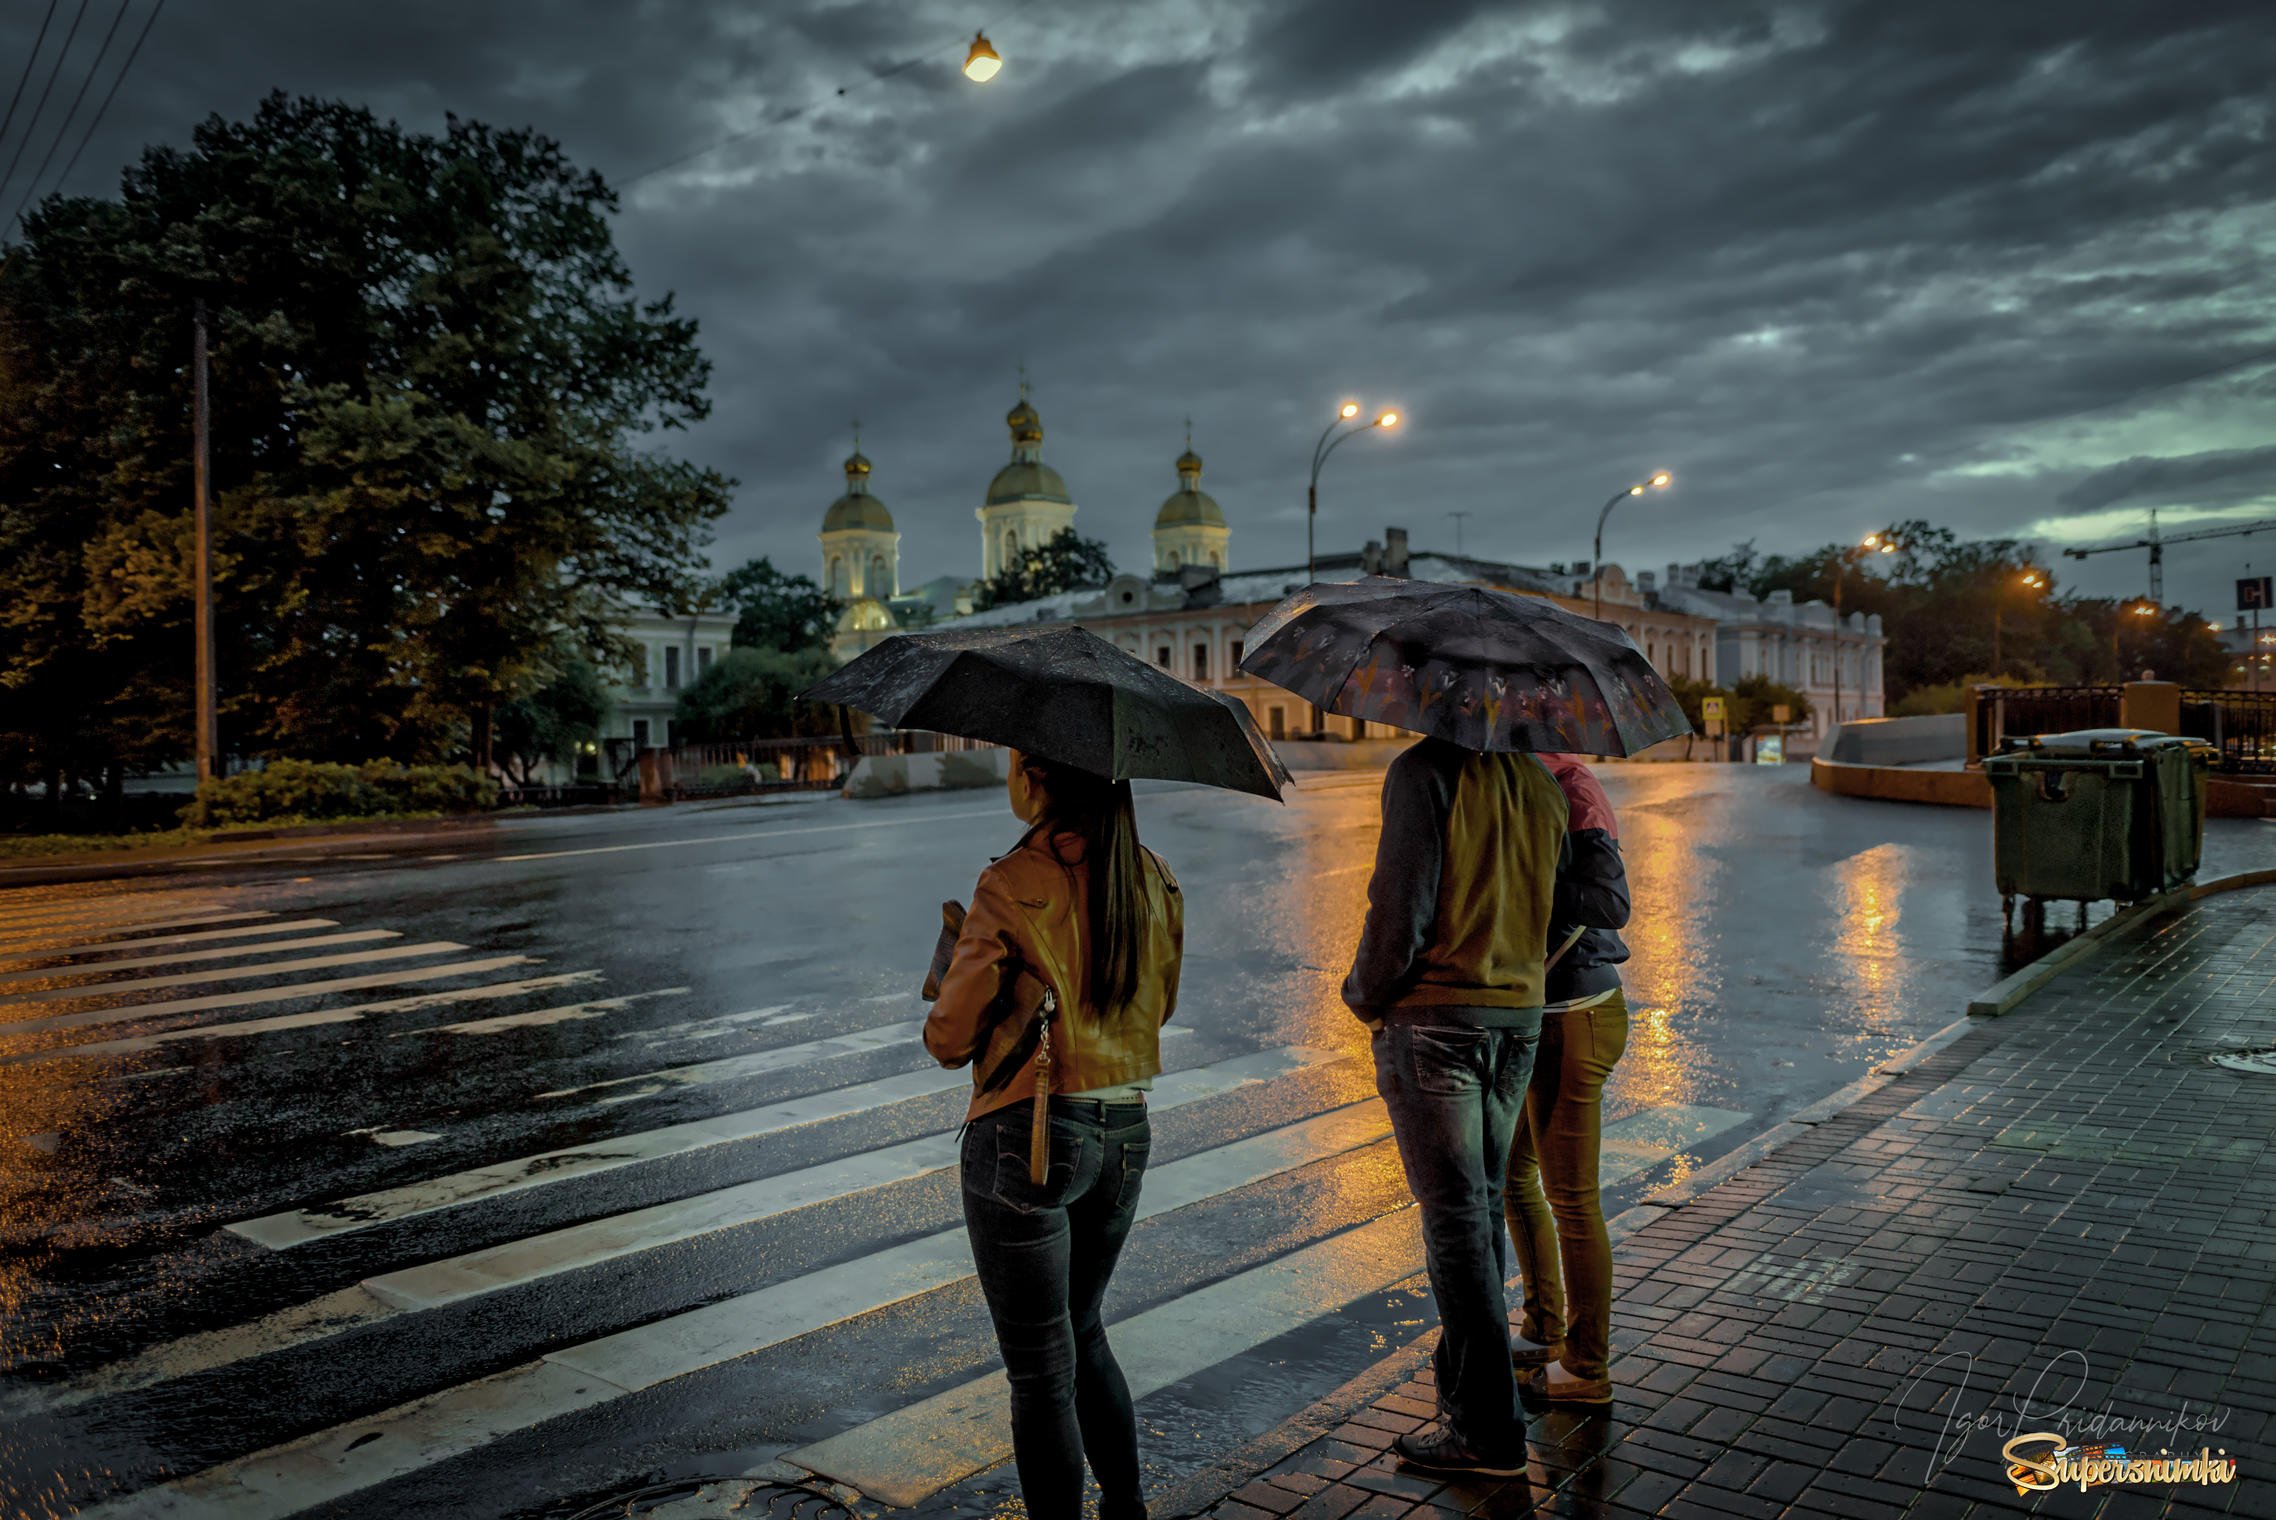 Погода вечером на улице. "Дождливый вечер". Дождь в городе. Дождливое лето в городе. Город под дождем.